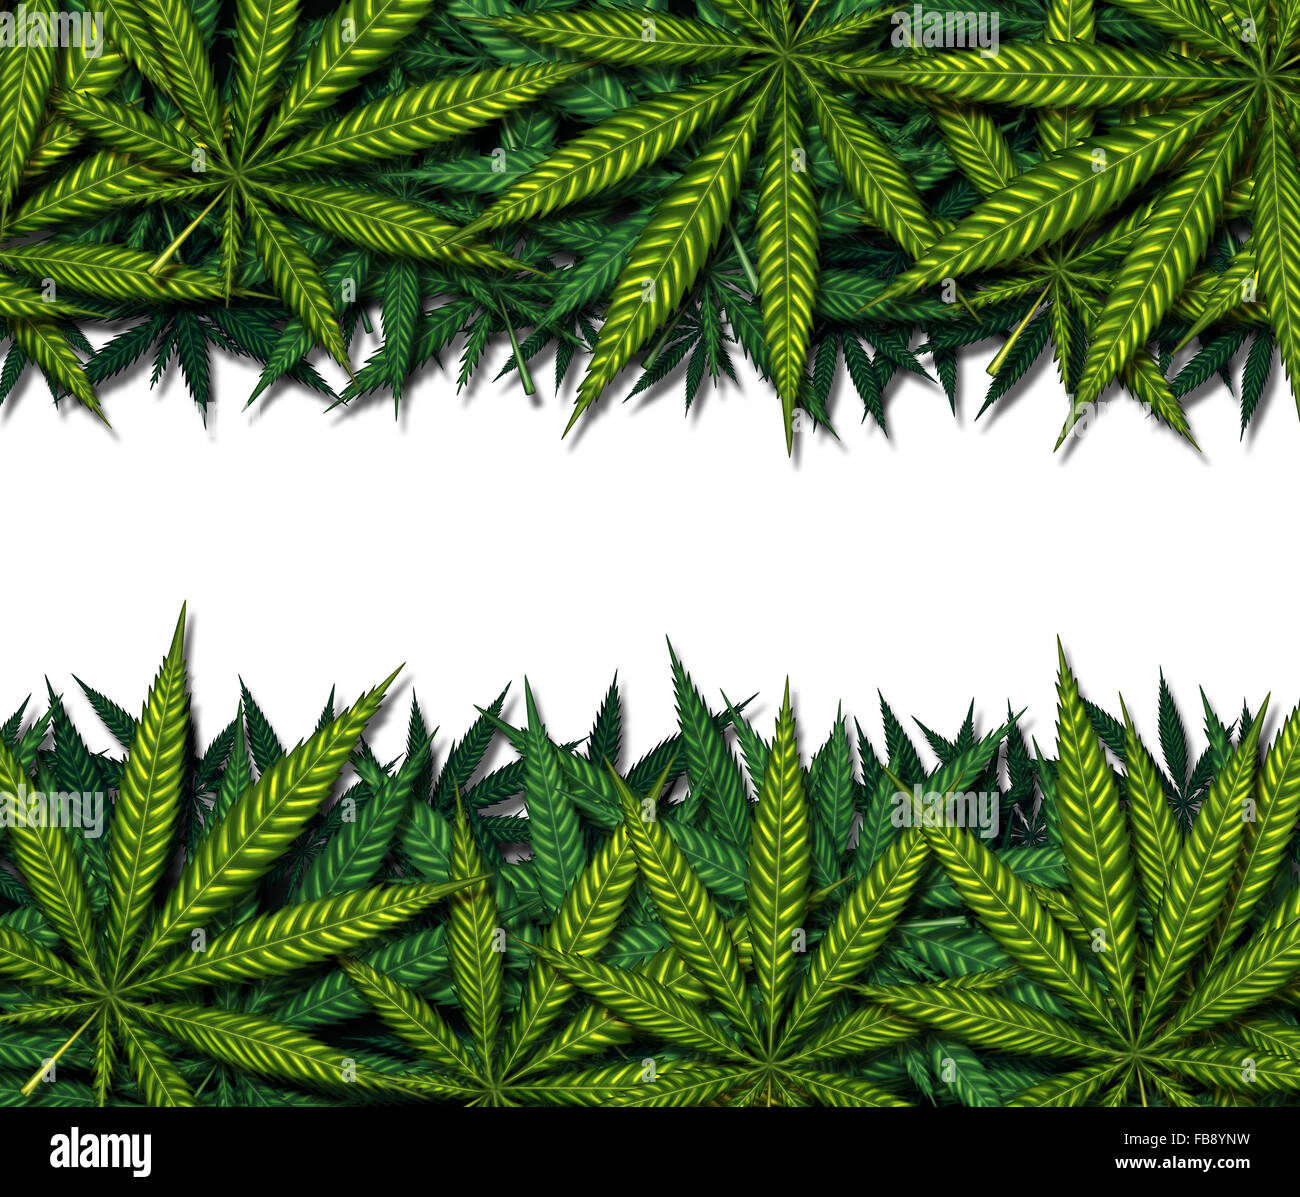 Diseño de borde de marihuana en un fondo blanco como símbolo de la olla o medicinales hierba médica como un grupo de hojas verdes como un símbolo de comunicación drogas cannabis. Foto de stock